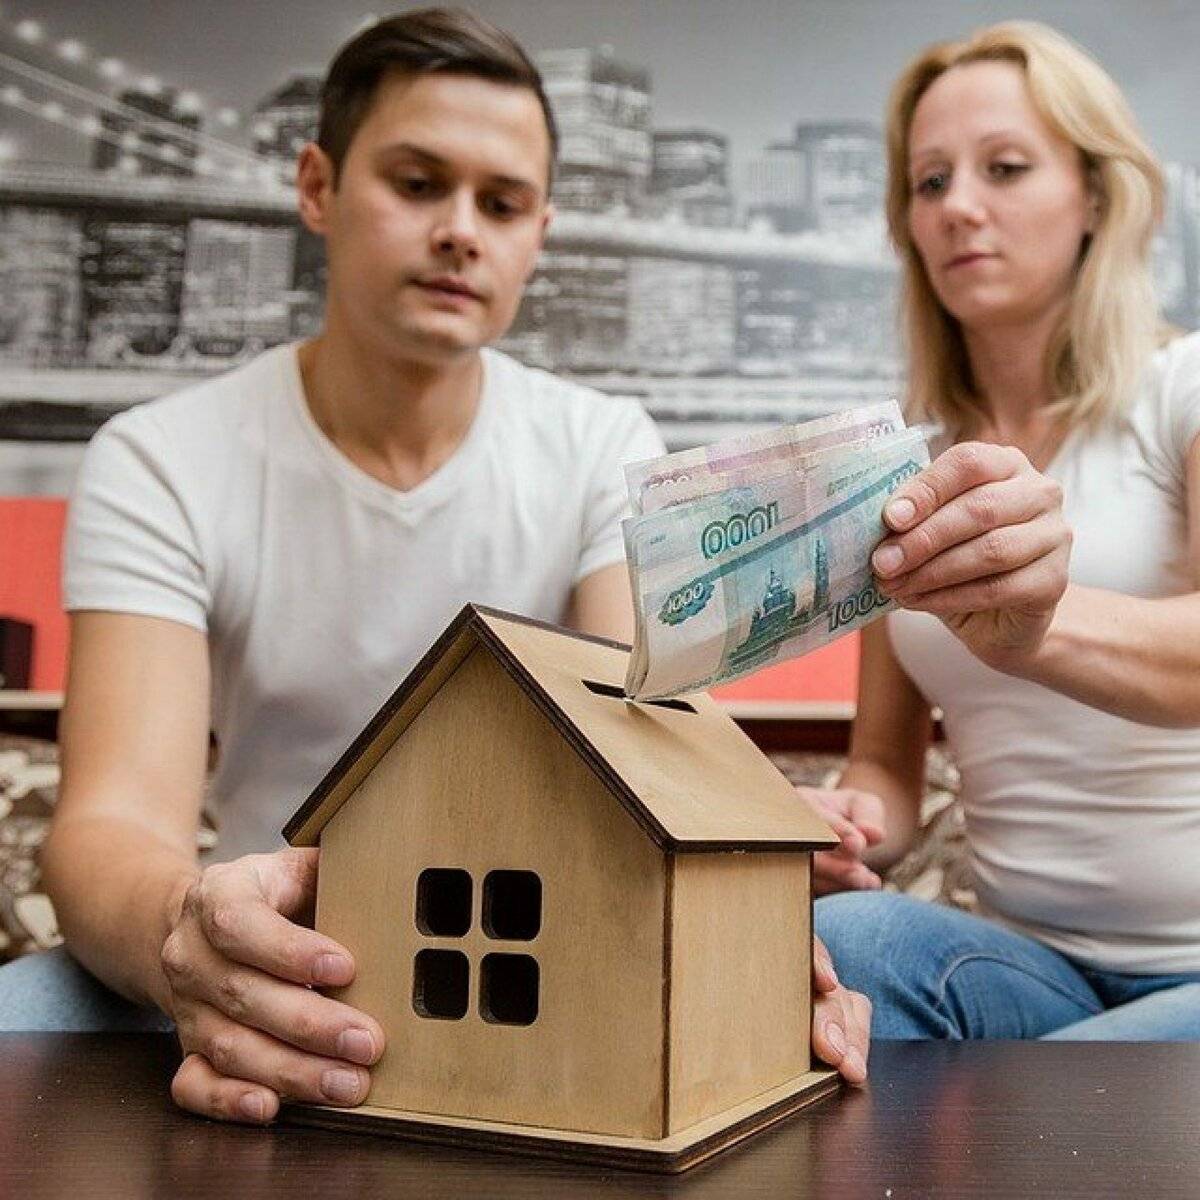 Ипотека на квартиру — стоит ли брать: взвешиваем все за и против. как выгодно и правильно оформлять ипотеку на жилье: советы